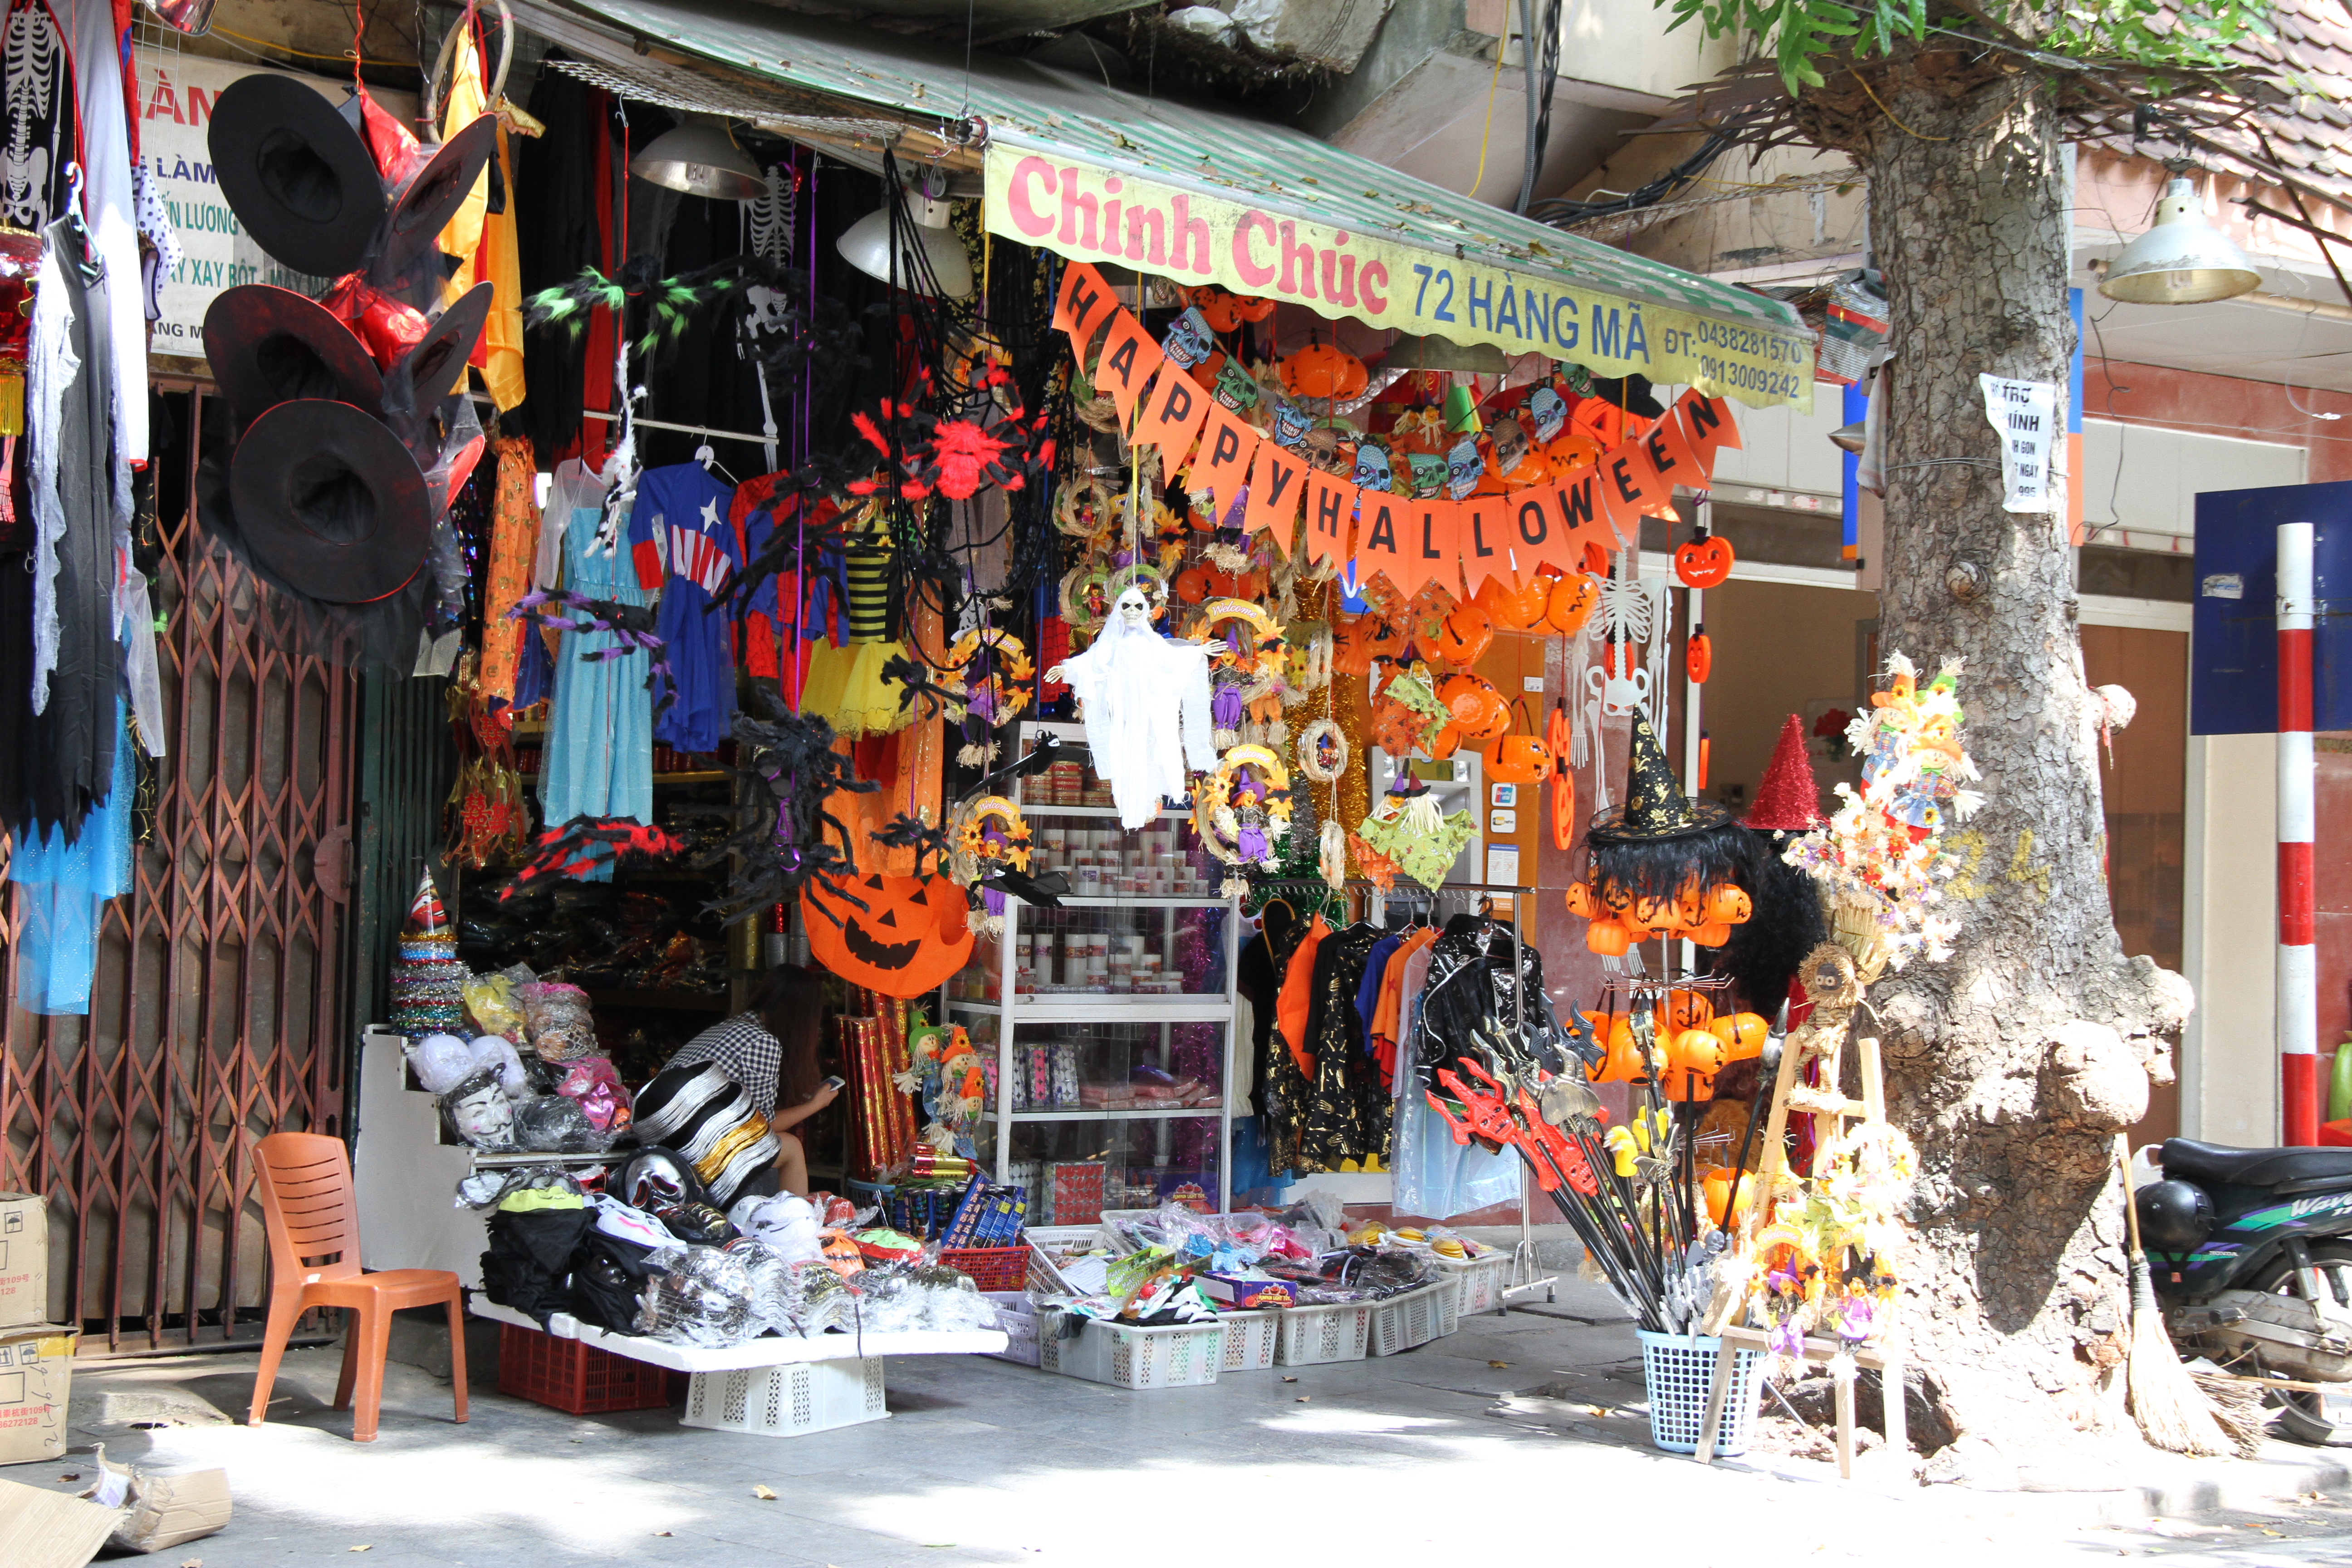 Thị trường Halloween: Hàng Trung Quốc chiếm lĩnh thị trường Hà Nội, giá cao   